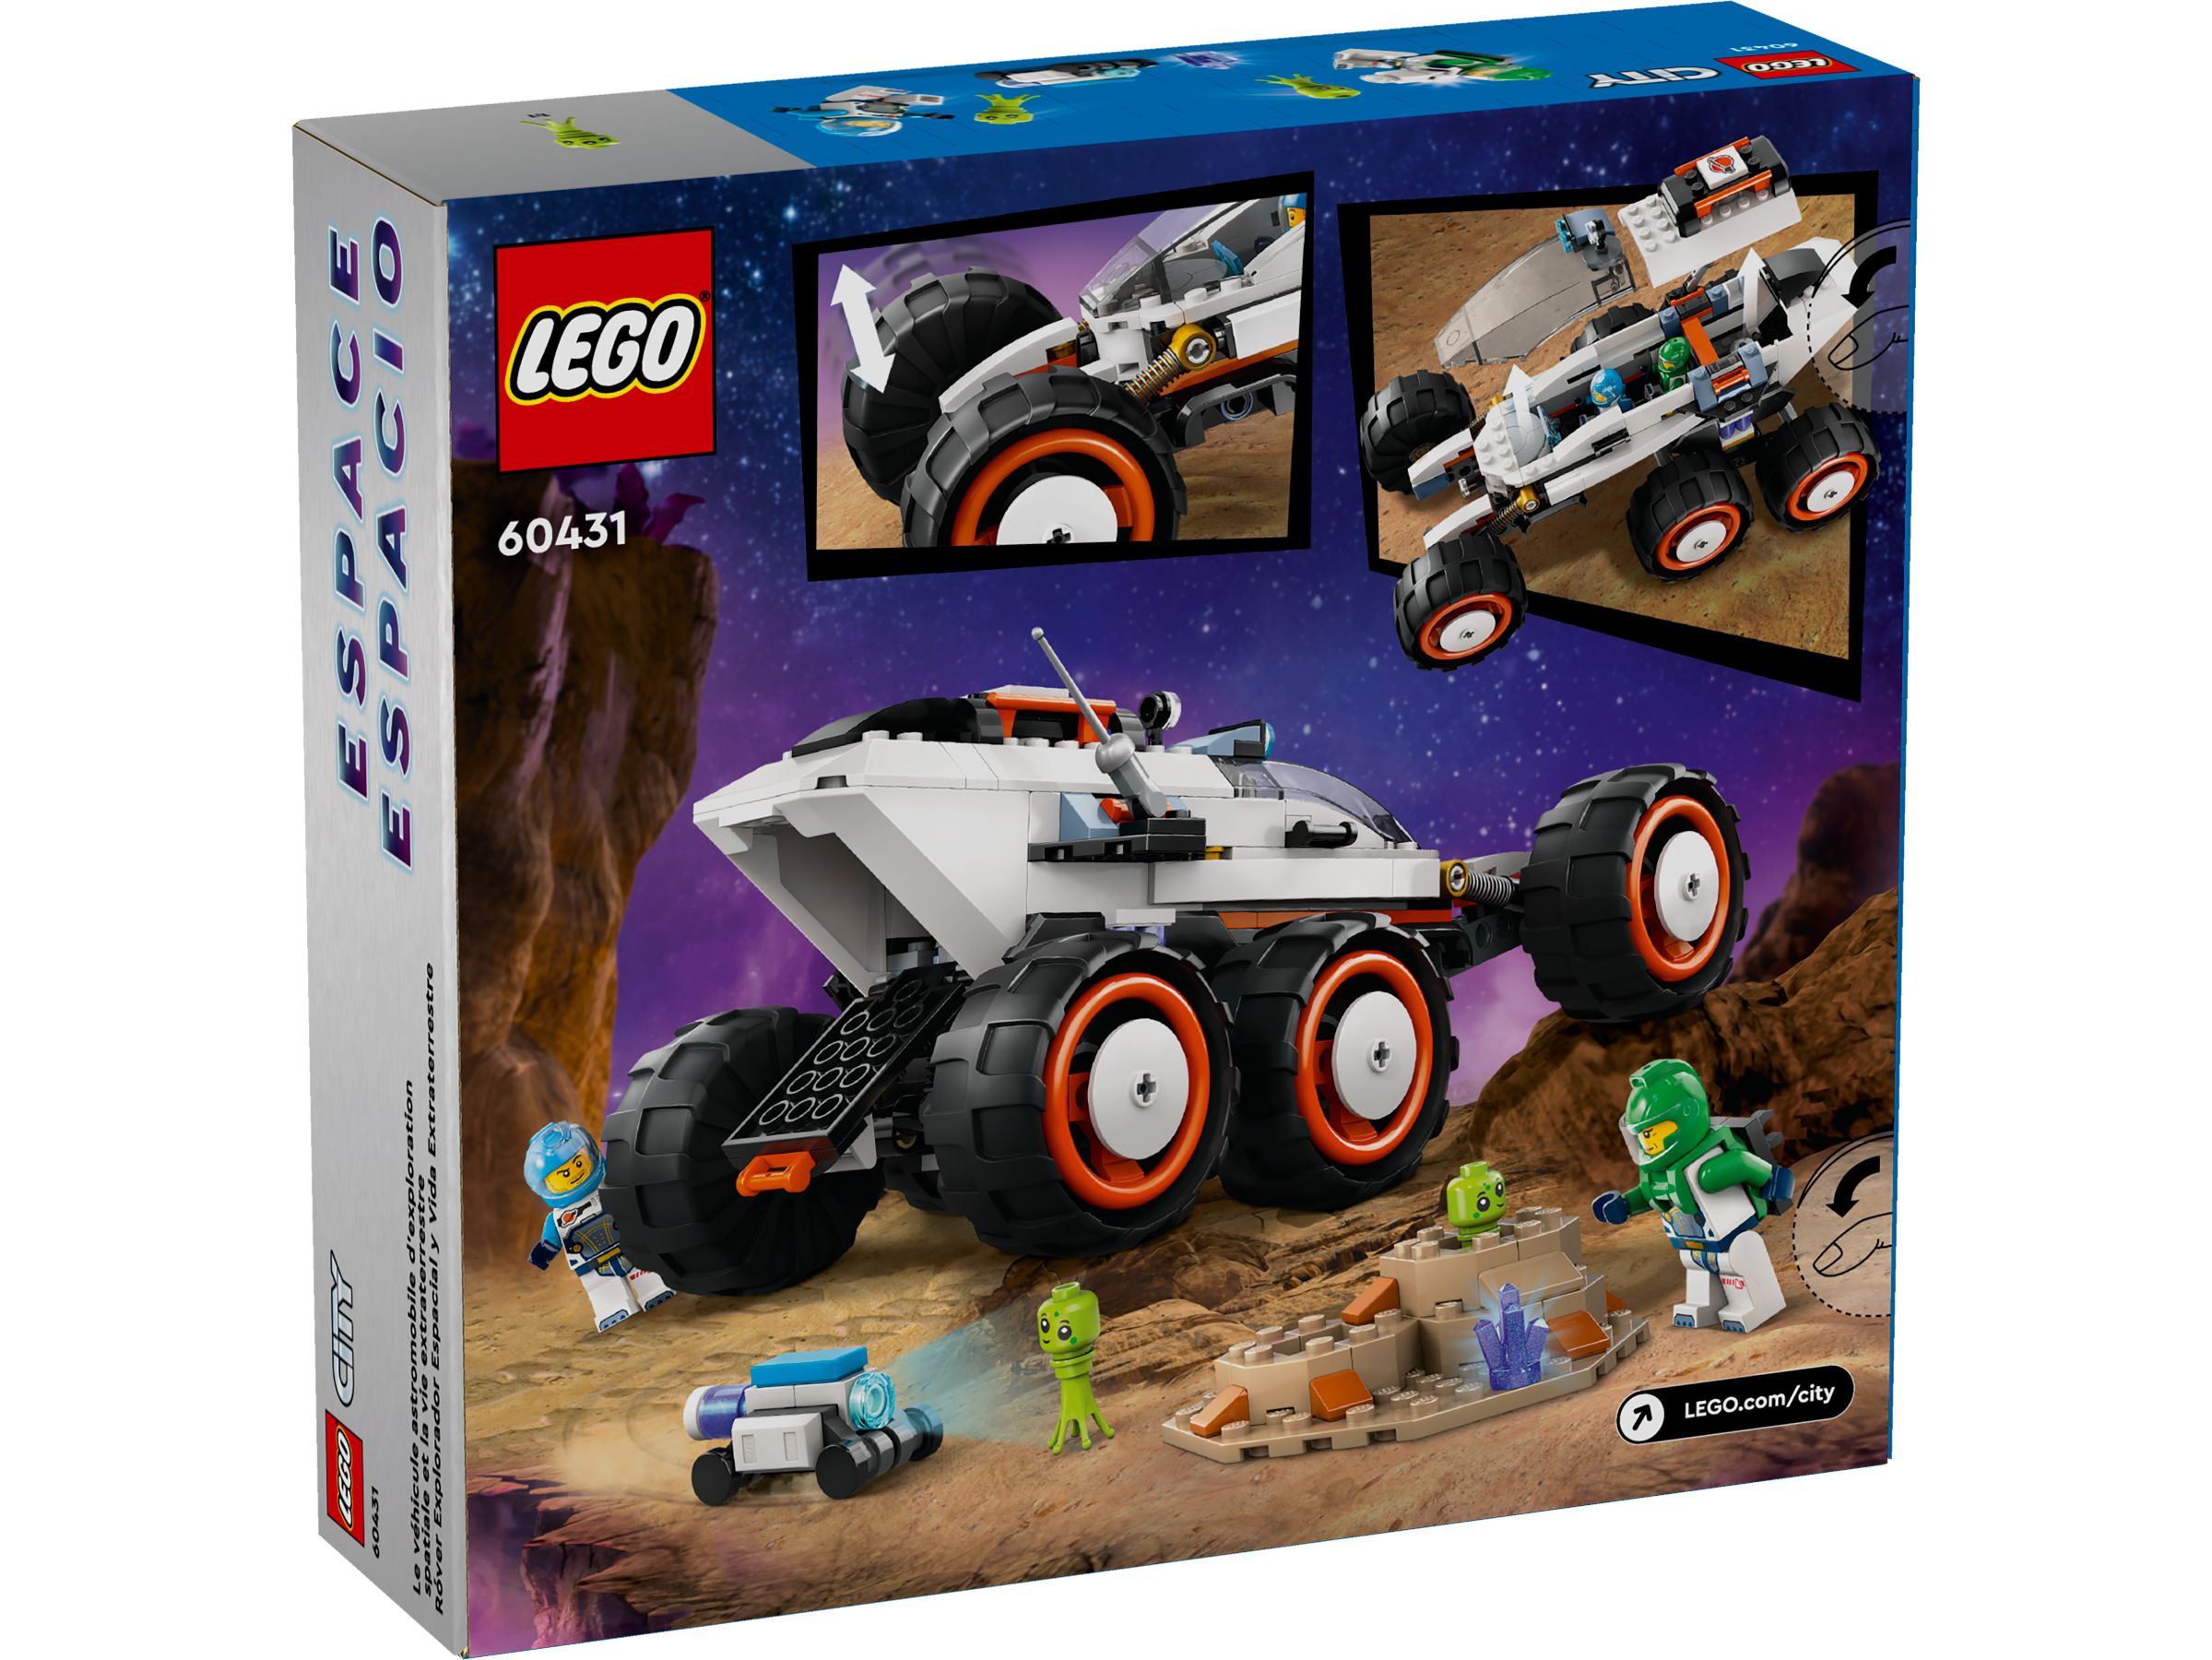 LEGO City 60431 Weltraum-Rover mit Außerirdischen LEGO_60431_Box5_v39.jpg